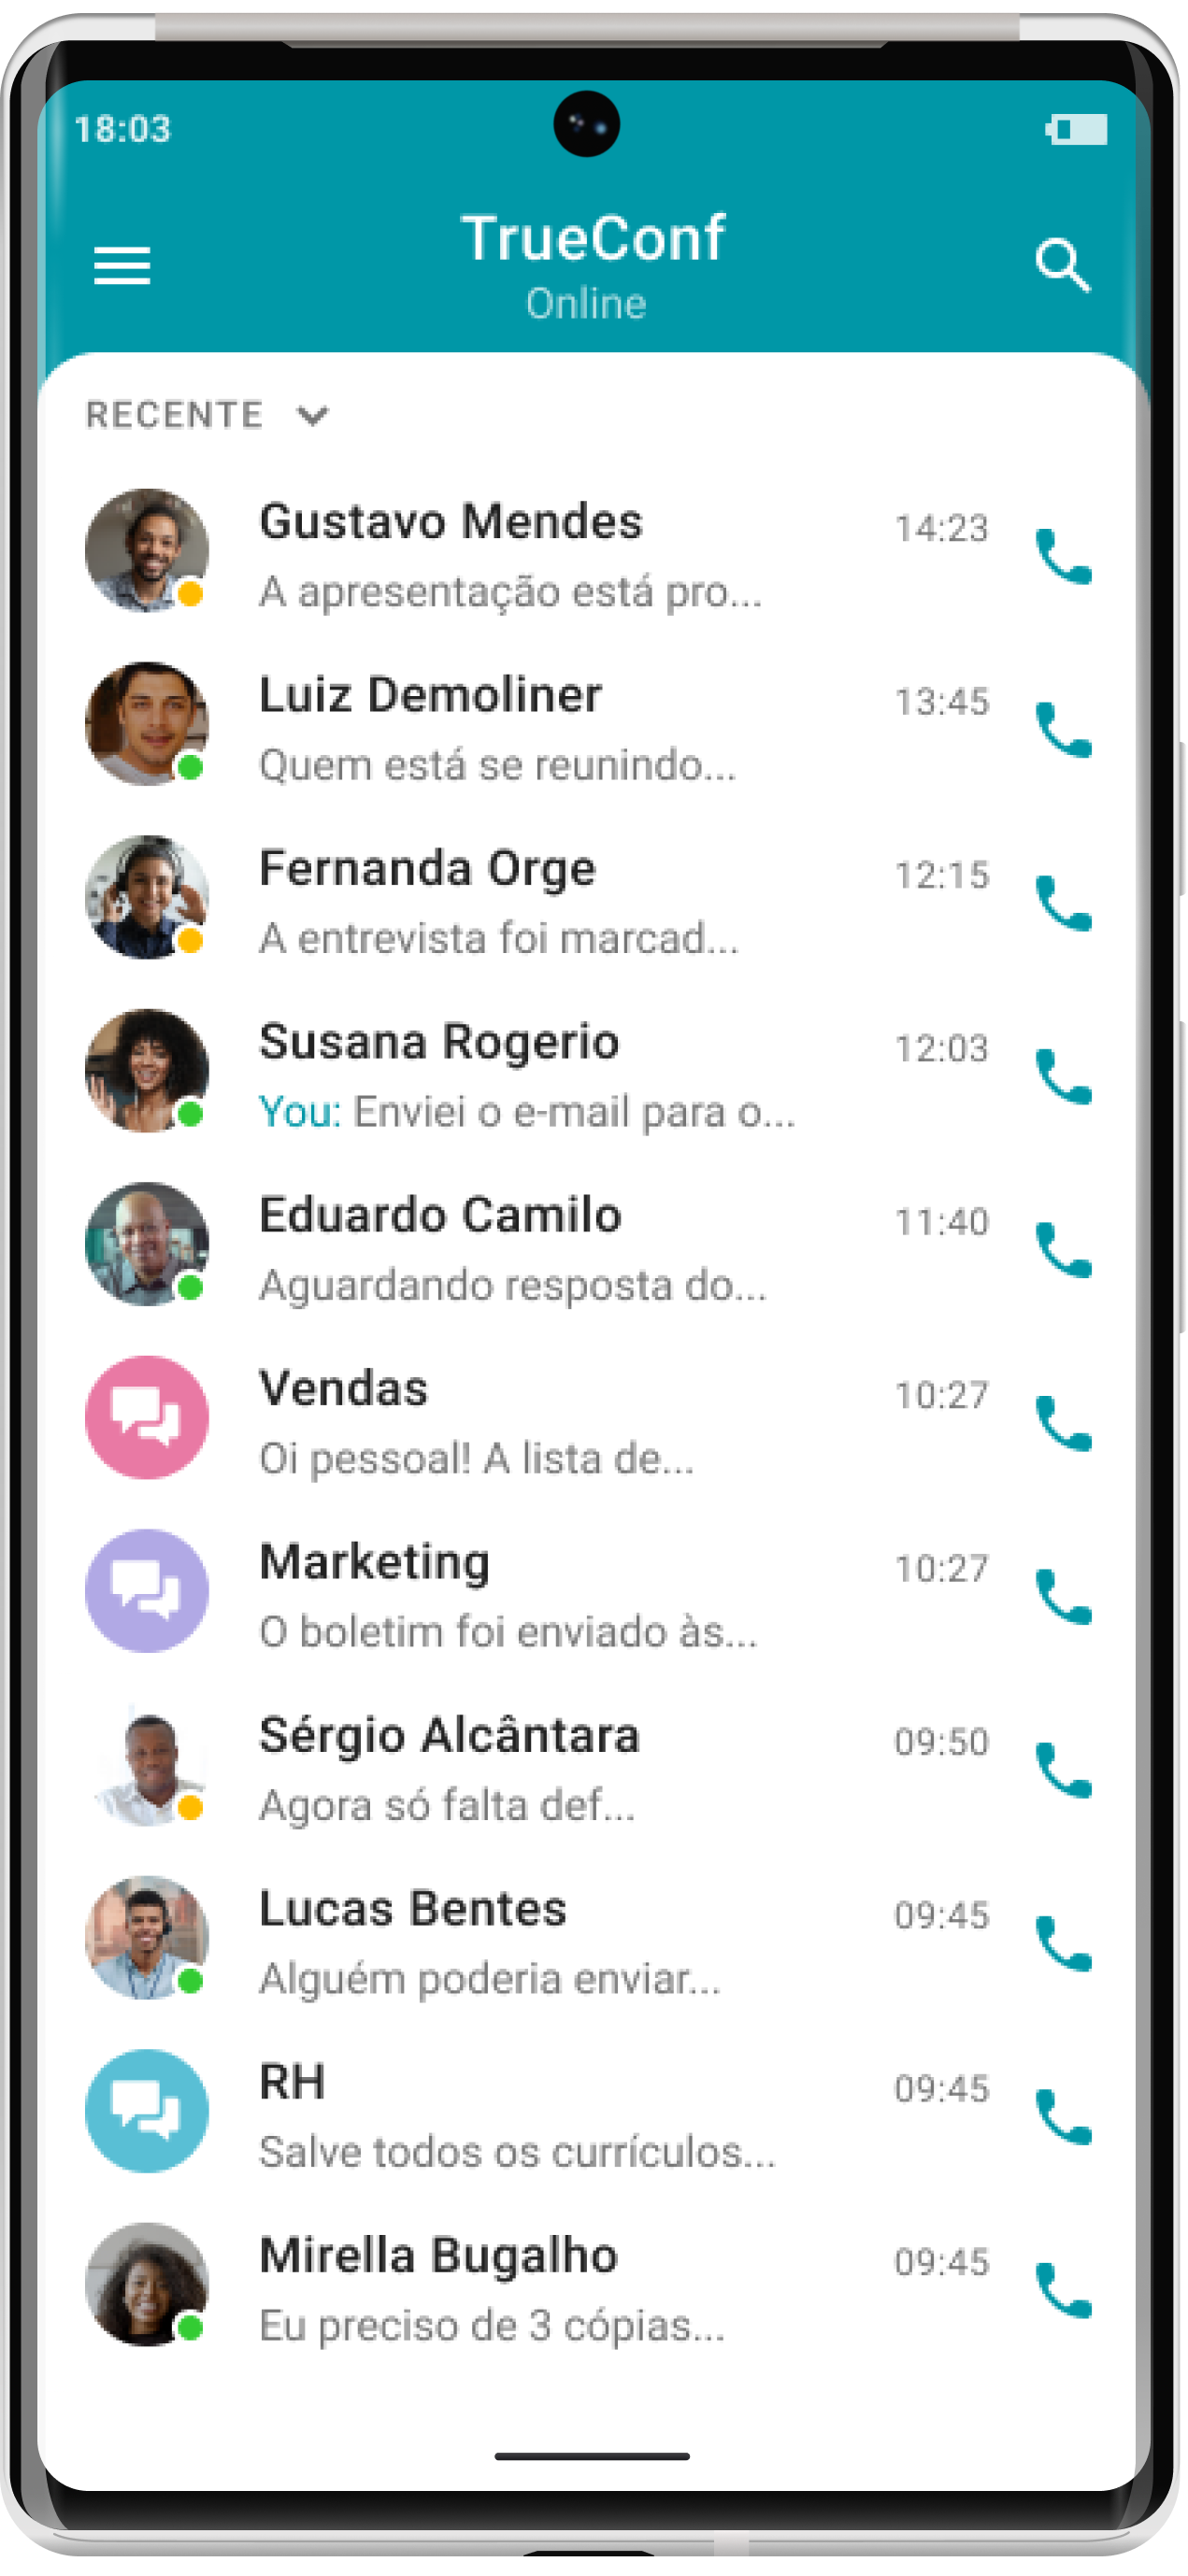 TrueConf 2.2 para Android: modo somente áudio e compartilhamento de arquivos 15